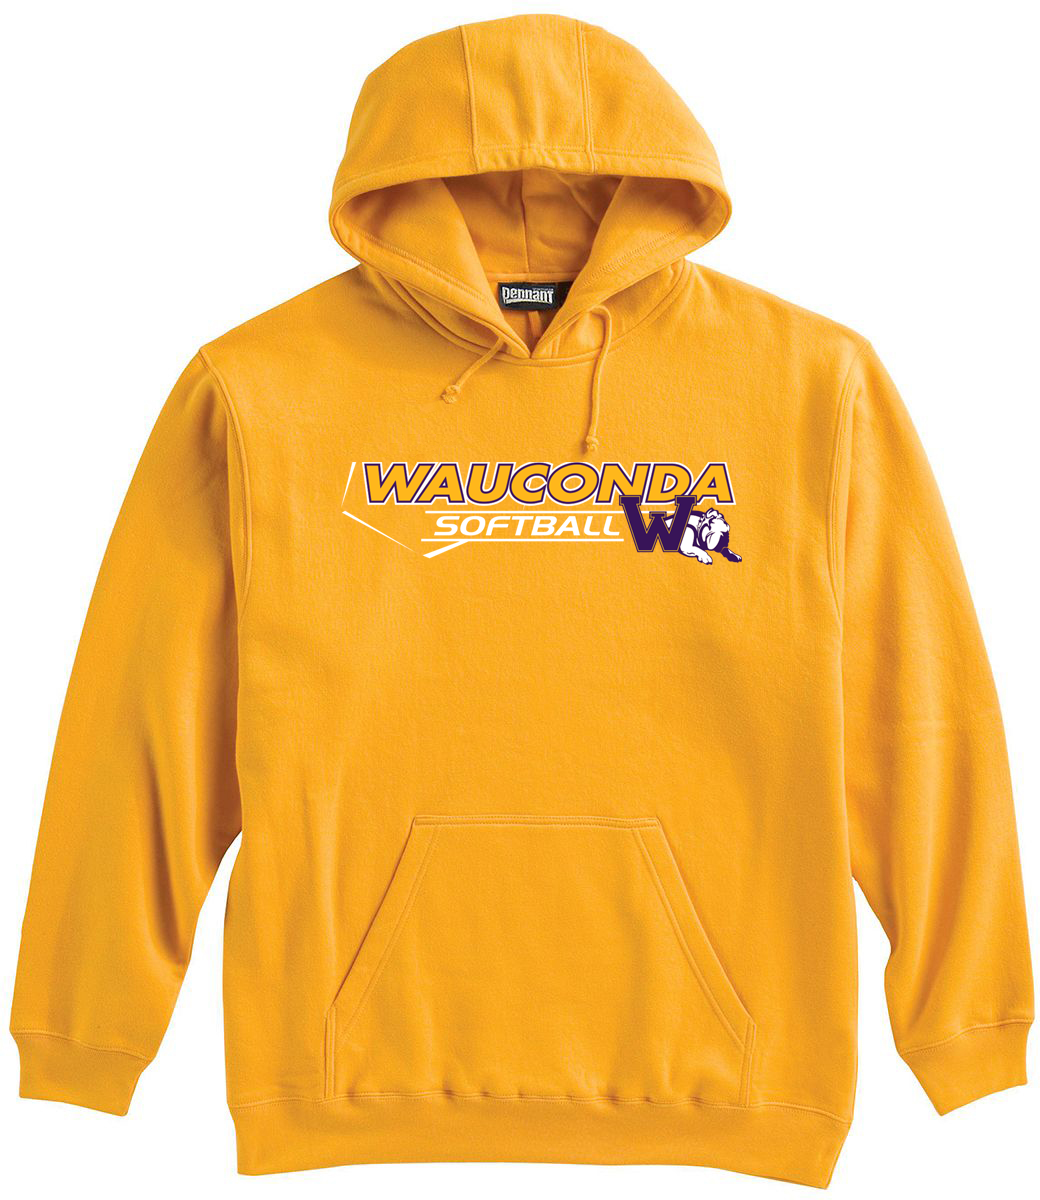 Wauconda Softball Sweatshirt